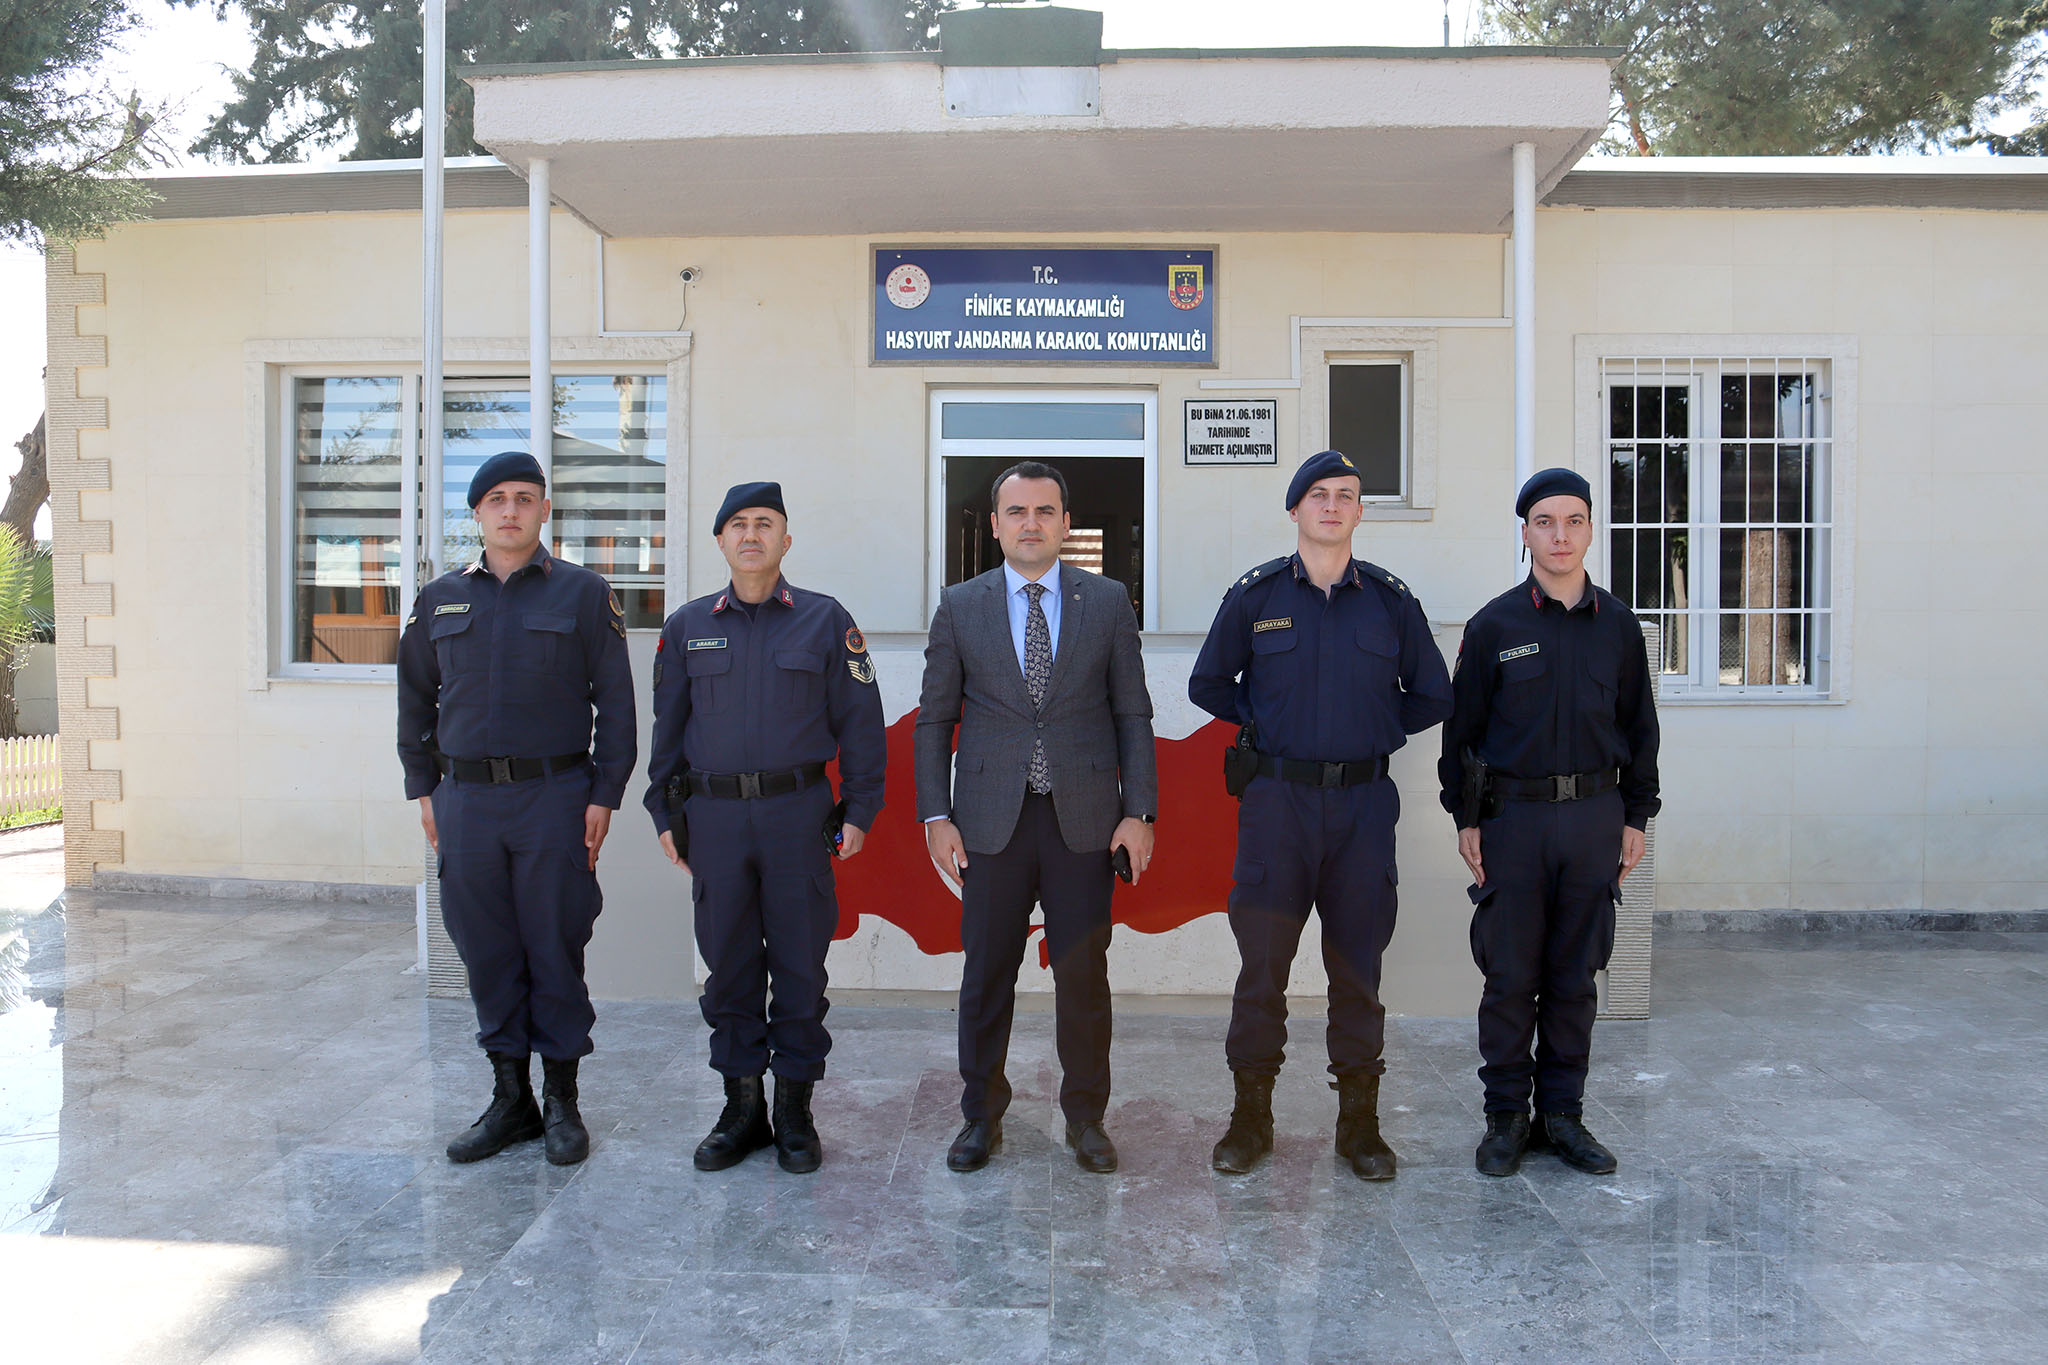 Kaymakam Musa Kazım ÇELİK, Hasyurt Jandarma Karakolunu ziyaret etti.